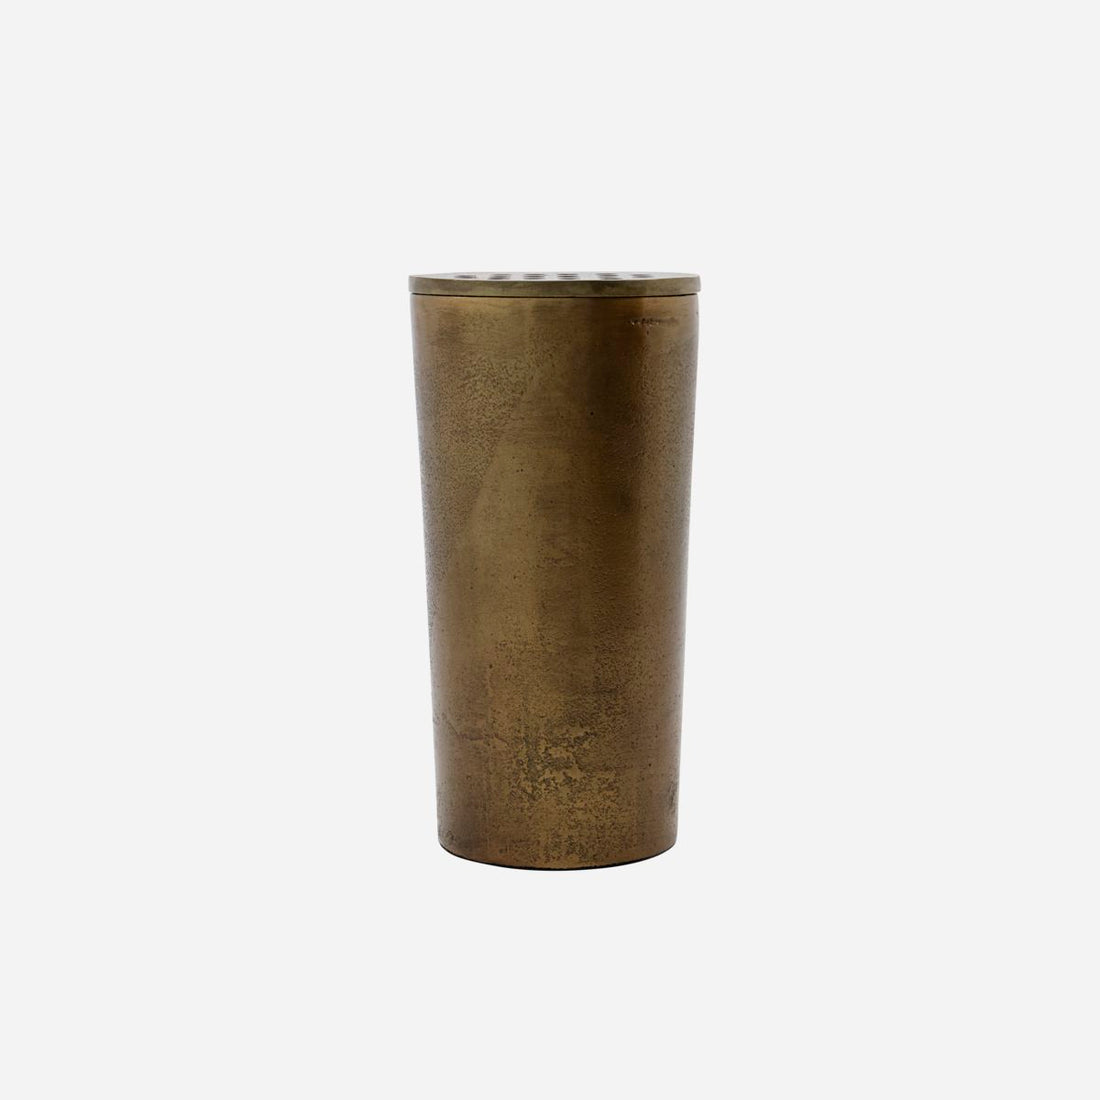 Vaso do Doutor da Casa, Fluxo, Messing H: 18 cm, dia: 9 cm